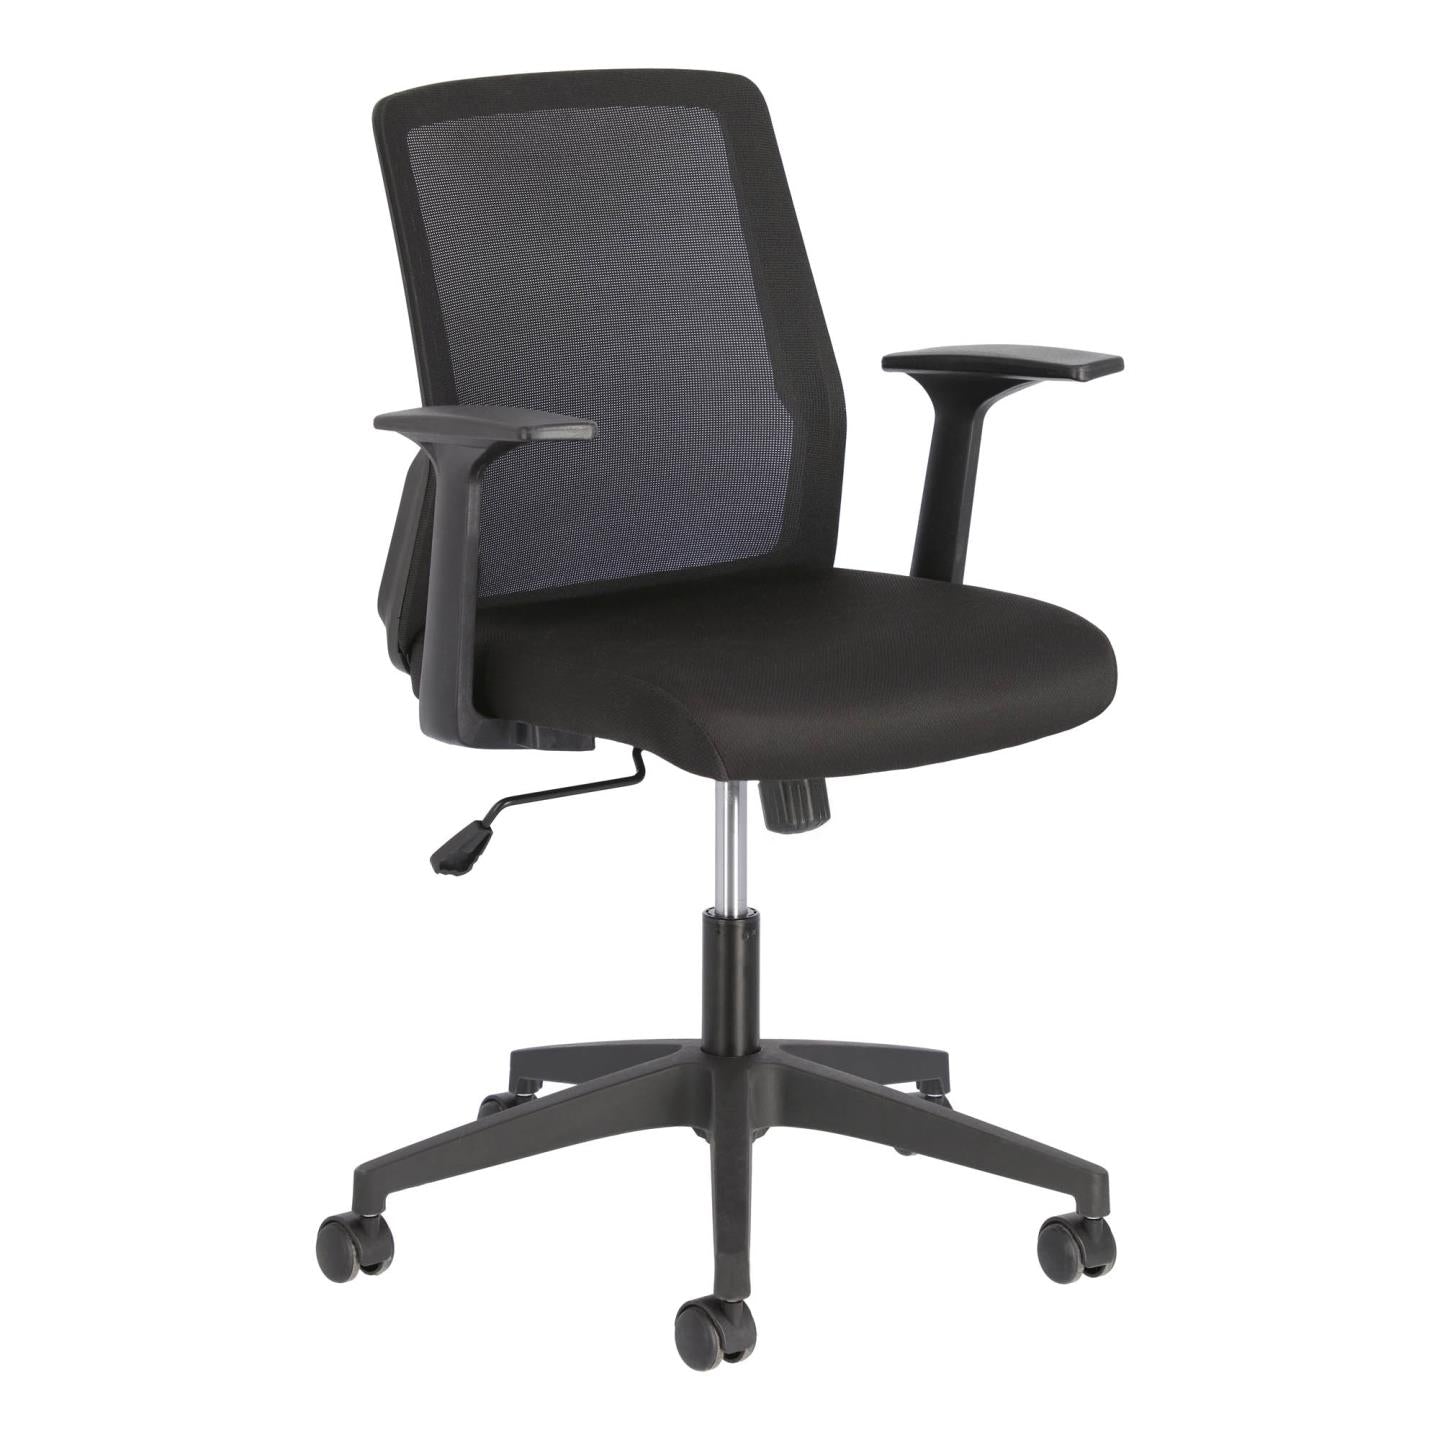 Nasia irodai szék fekete színben